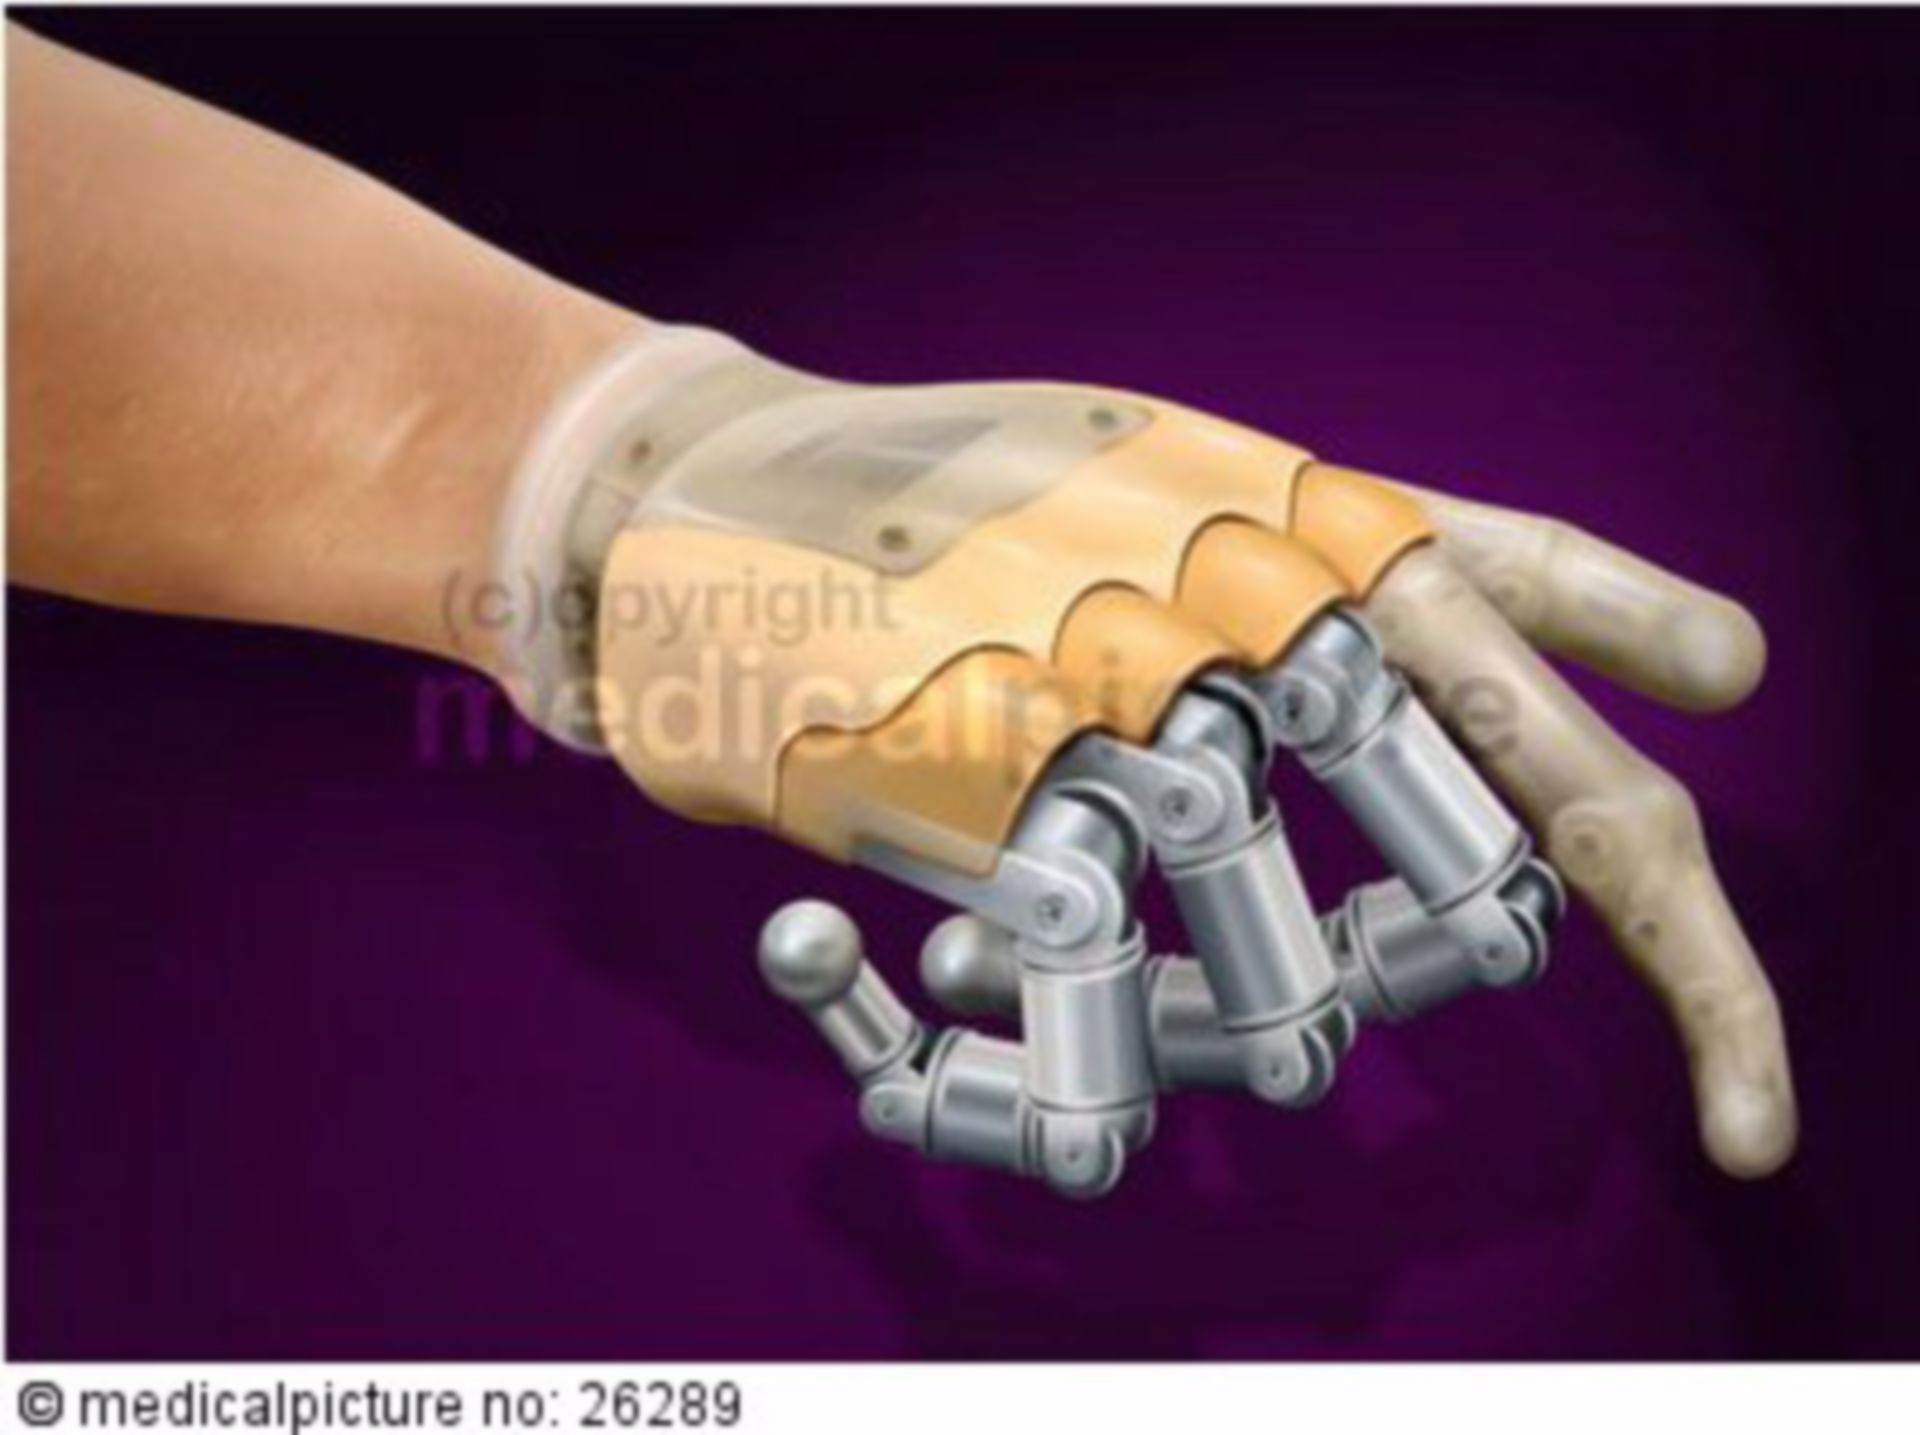  Modellierung einer Handprothese 
